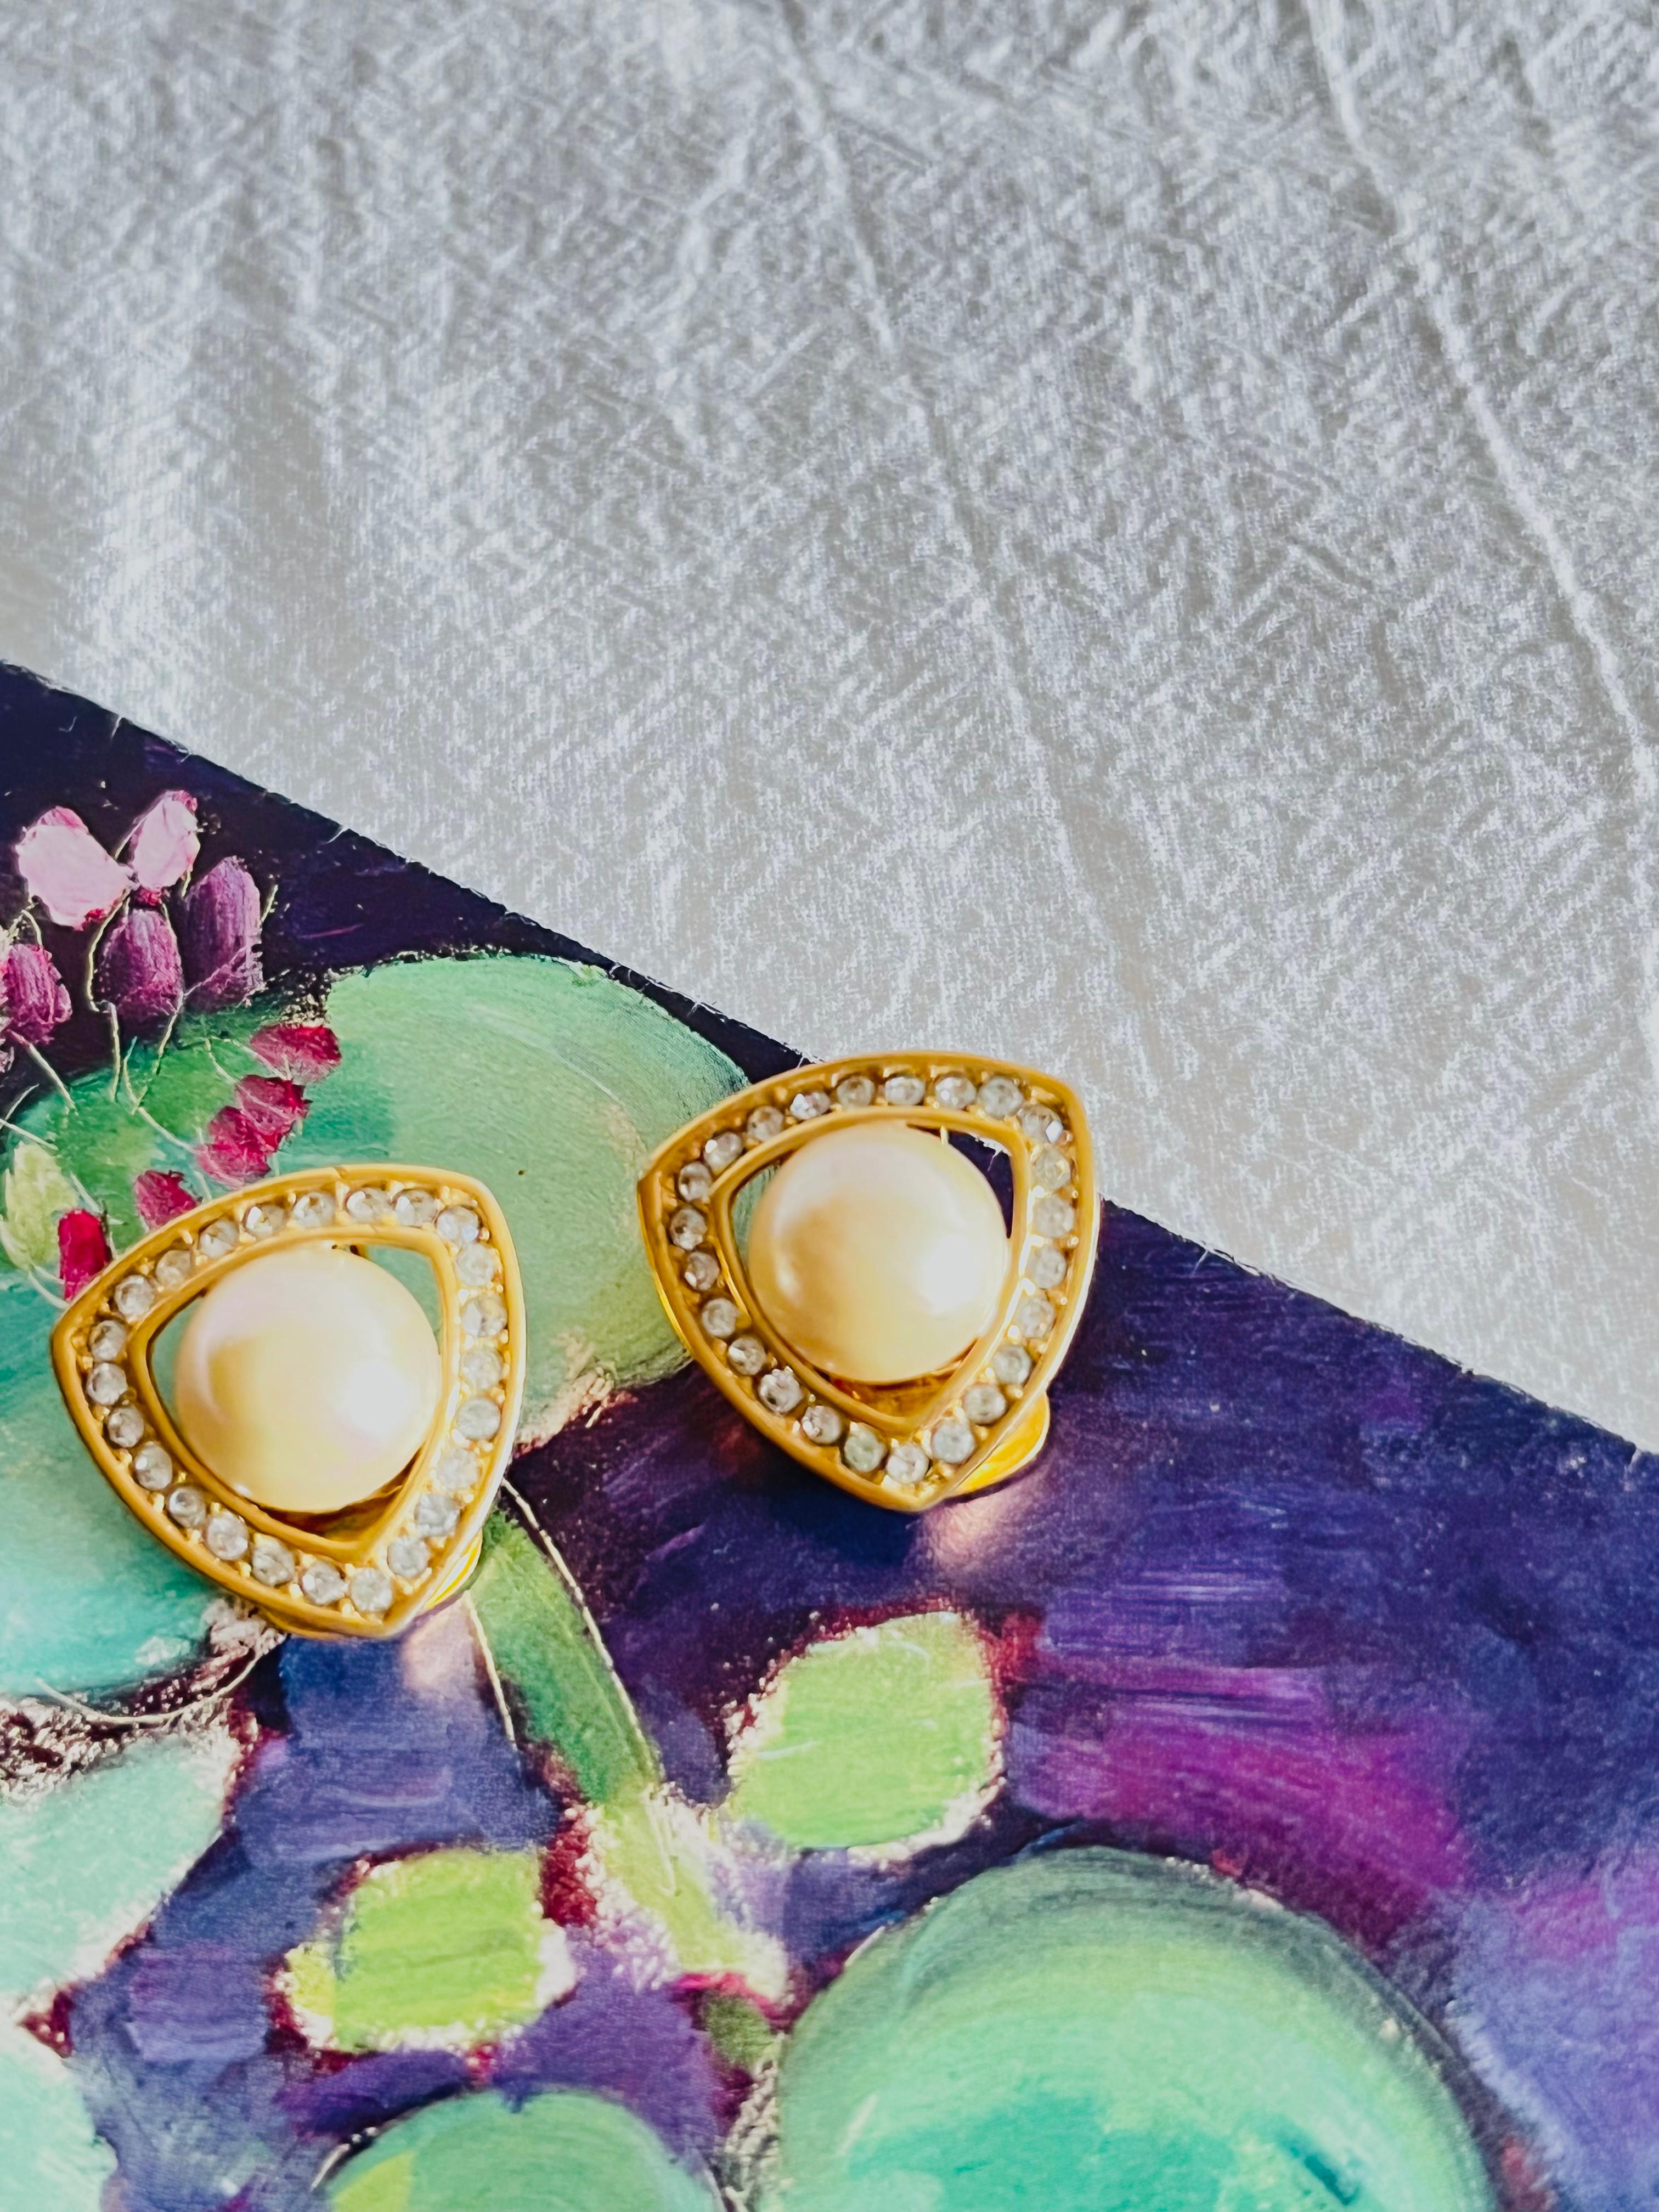 Christian Dior Vintage 1980s Dreieck durchbrochene Ohrringe mit weißen Perlen und Kristallen, vergoldet

Sehr guter Zustand. Einige leichte Kratzer oder Farbverluste, kaum wahrnehmbar. 100% echt.

Ein sehr schönes Paar Ohrringe von Chr. DIOR,